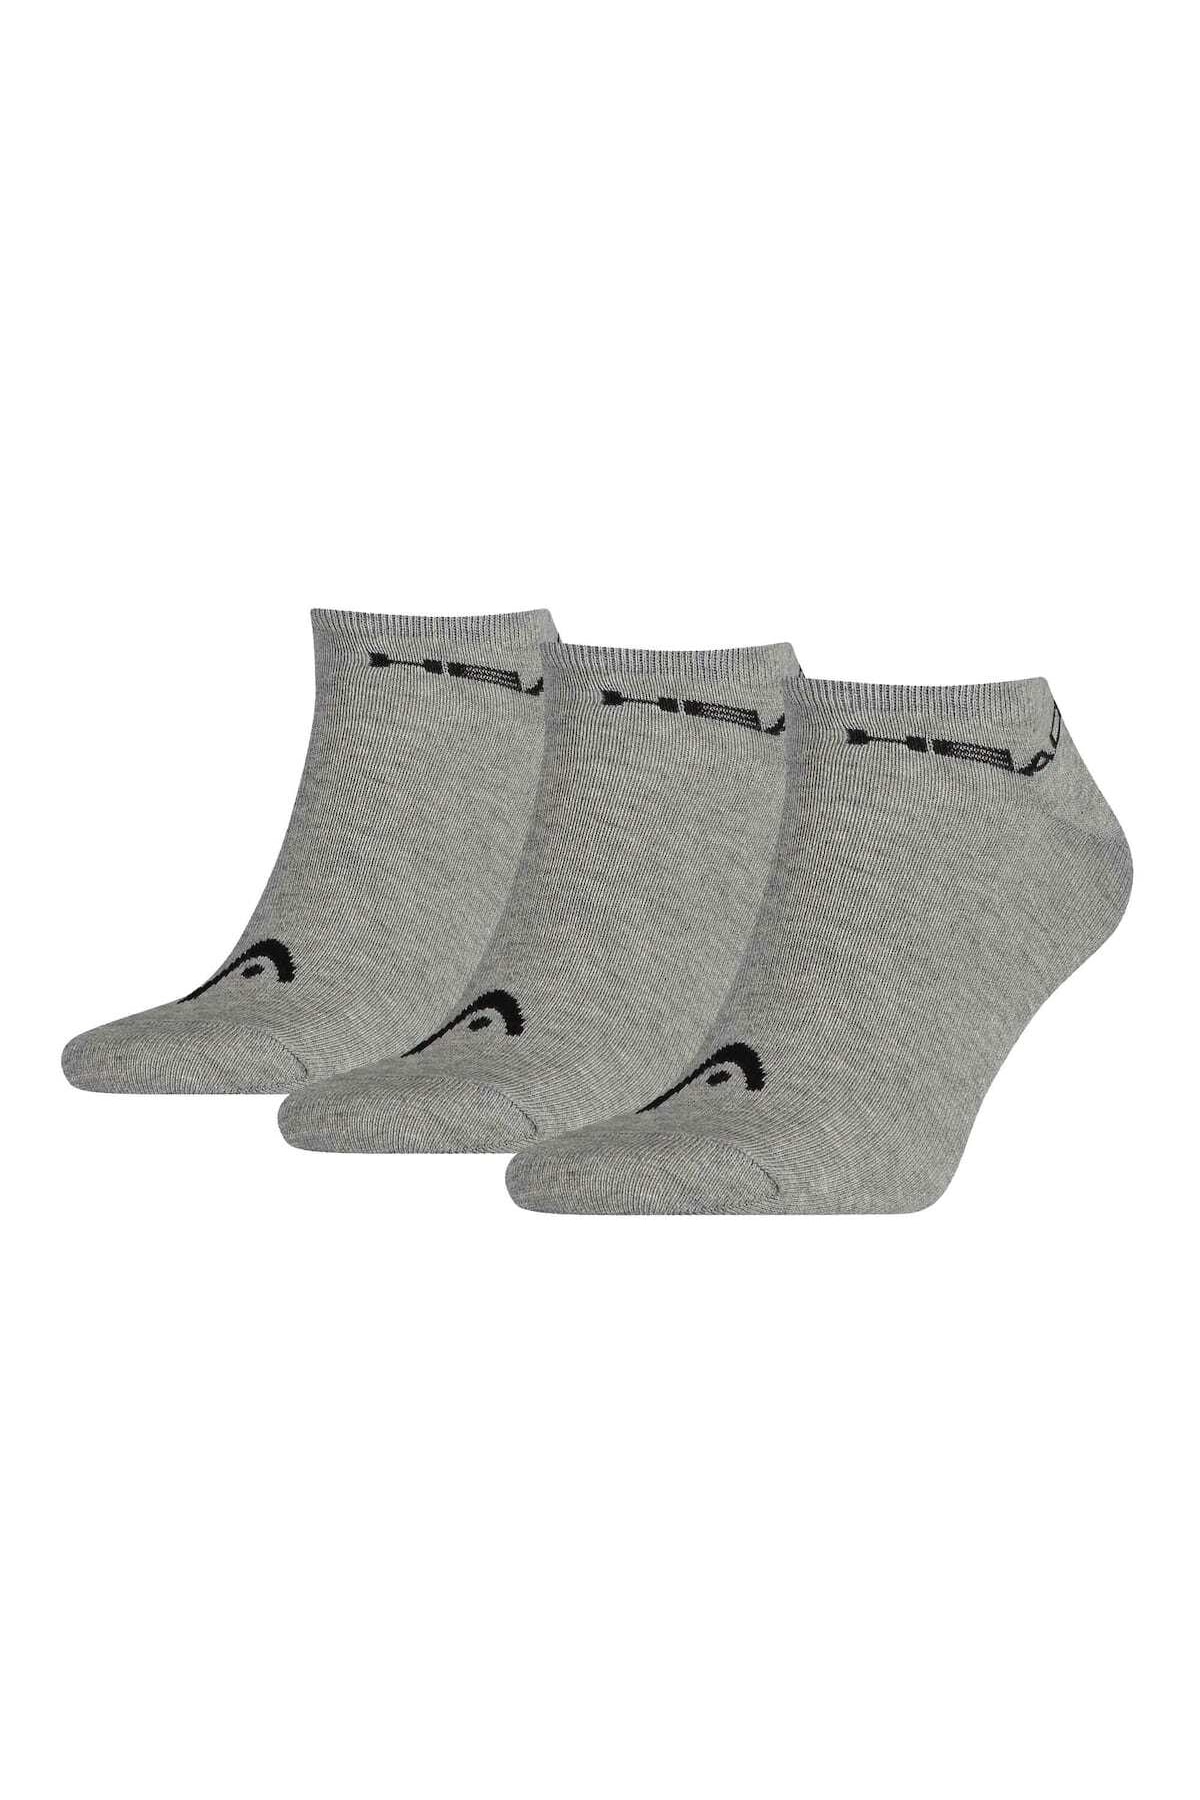 Head Socken Grau 3er-Pack Fast ausverkauft